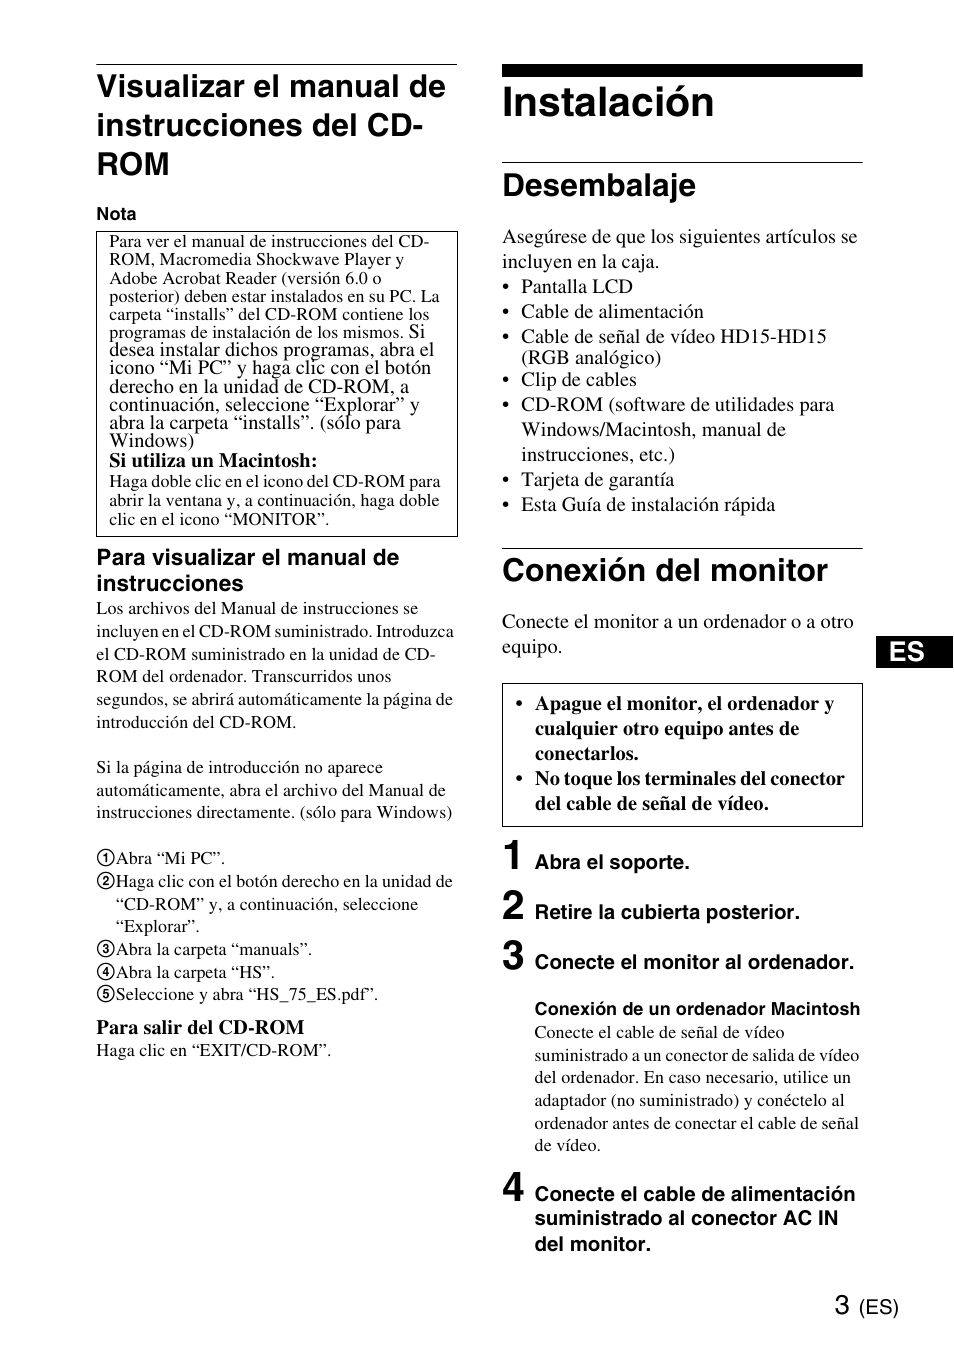 Instalación, Visualizar el manual de instrucciones del cd- rom, Desembalaje | Conexión del monitor | Sony SDM-HS75 User Manual | Page 15 / 20